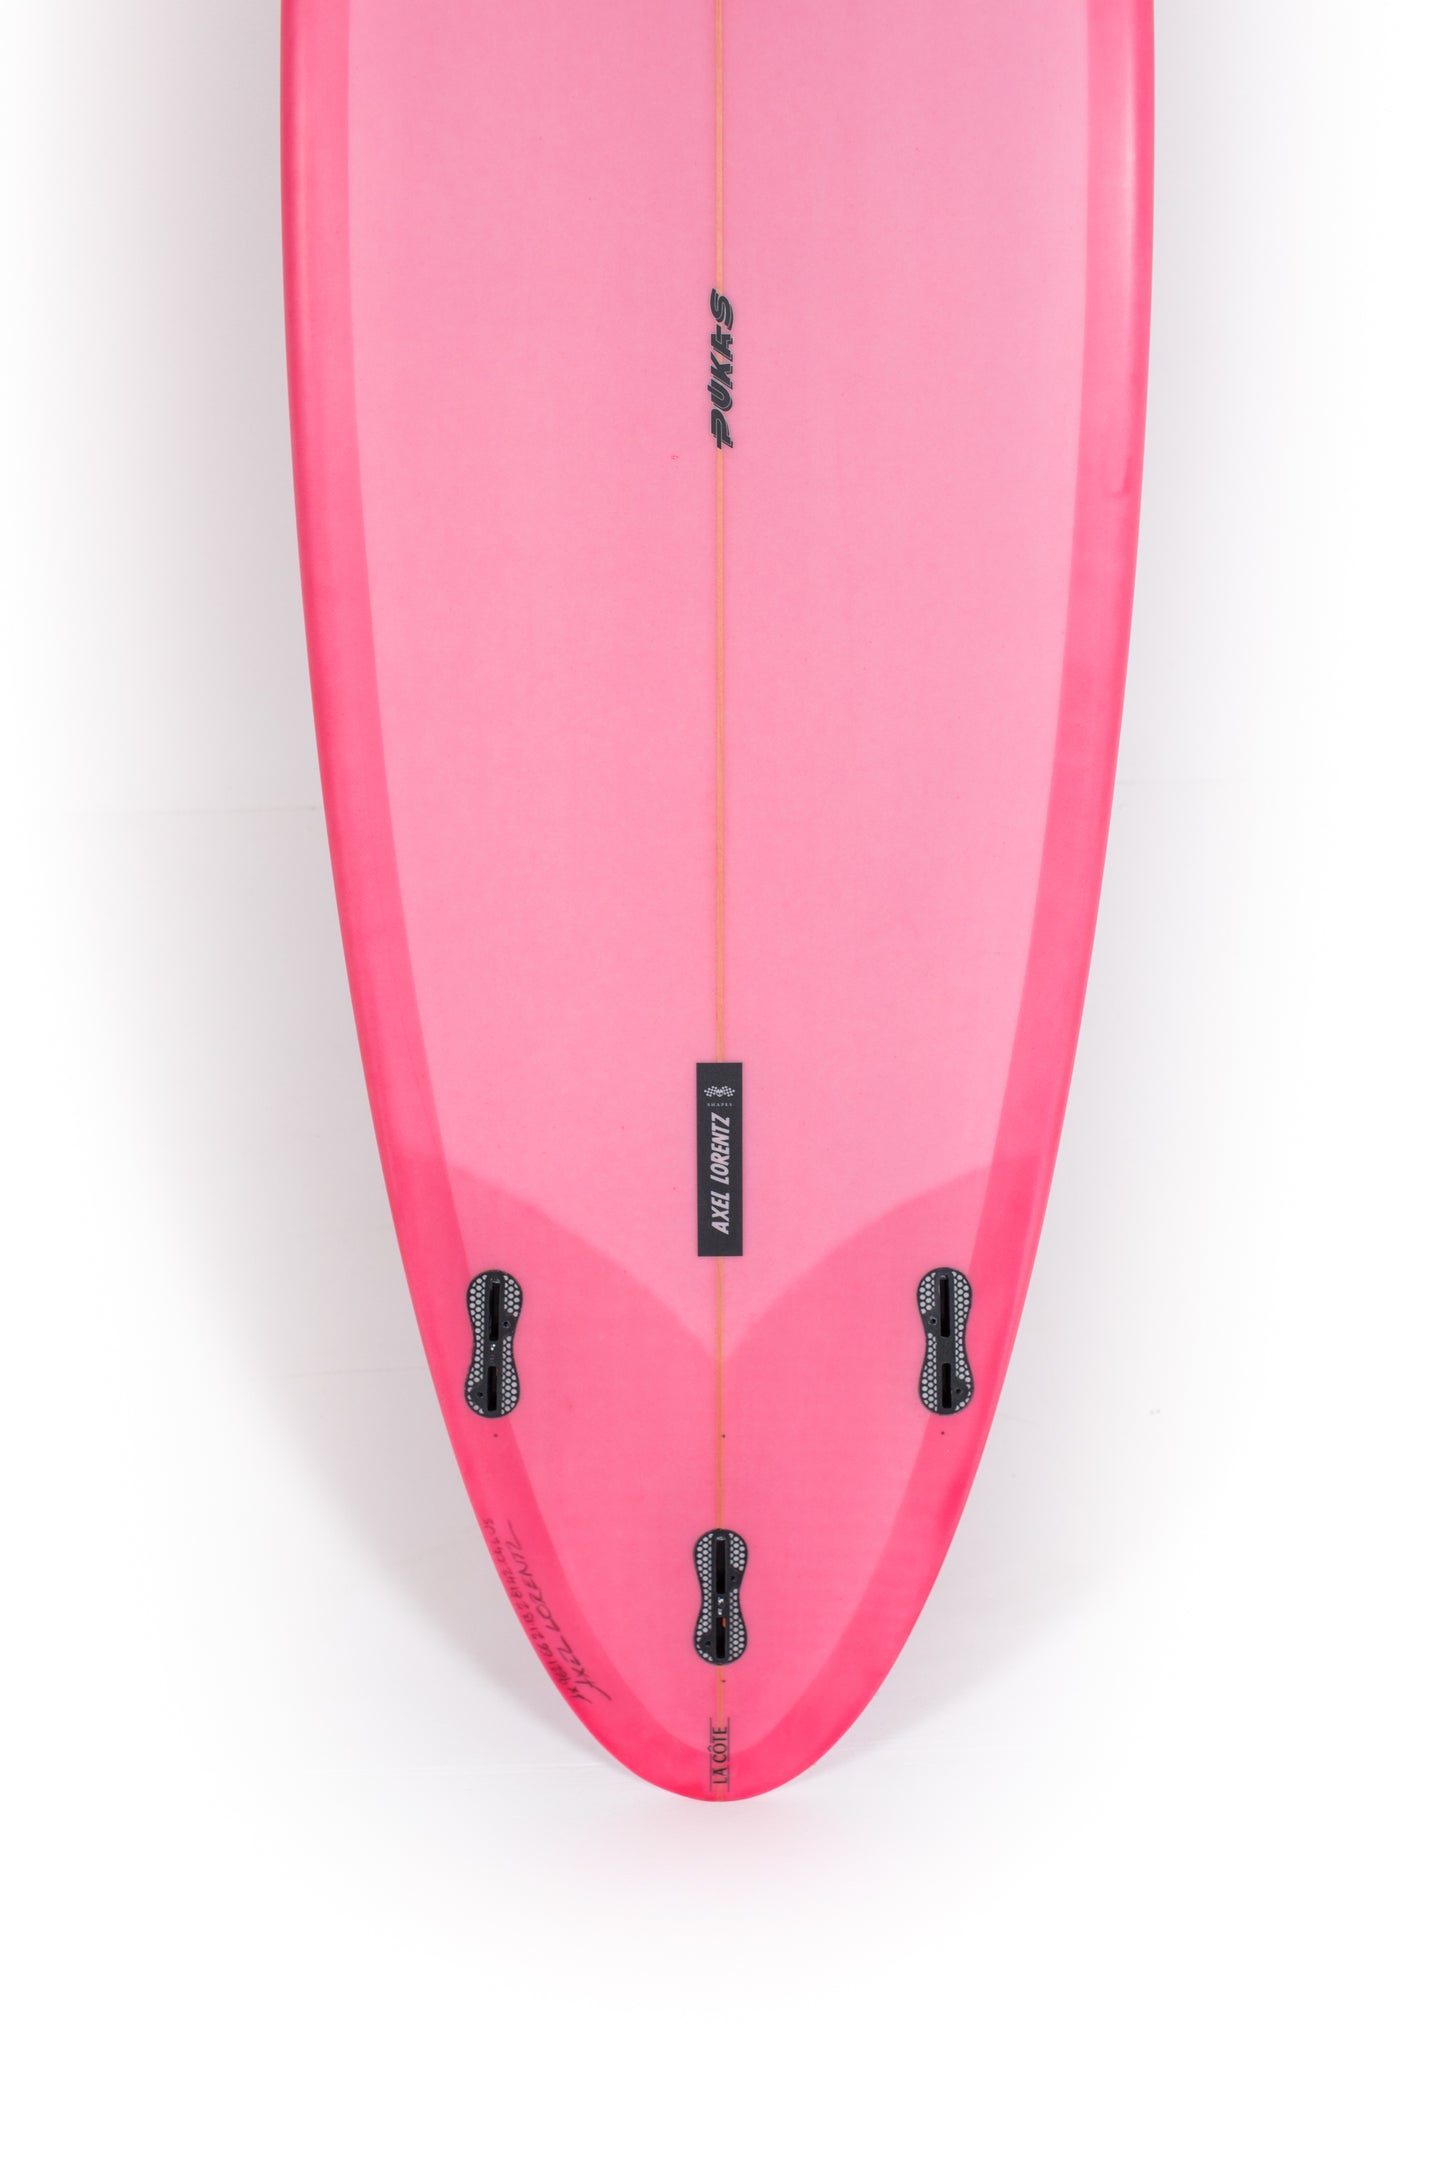 
                  
                    Pukas Surf Shop - Pukas Surfboard - LA CÔTE by Axel Lorentz - 6'6" x 21,13 x 2,81 - 42,04L -  AX09621
                  
                